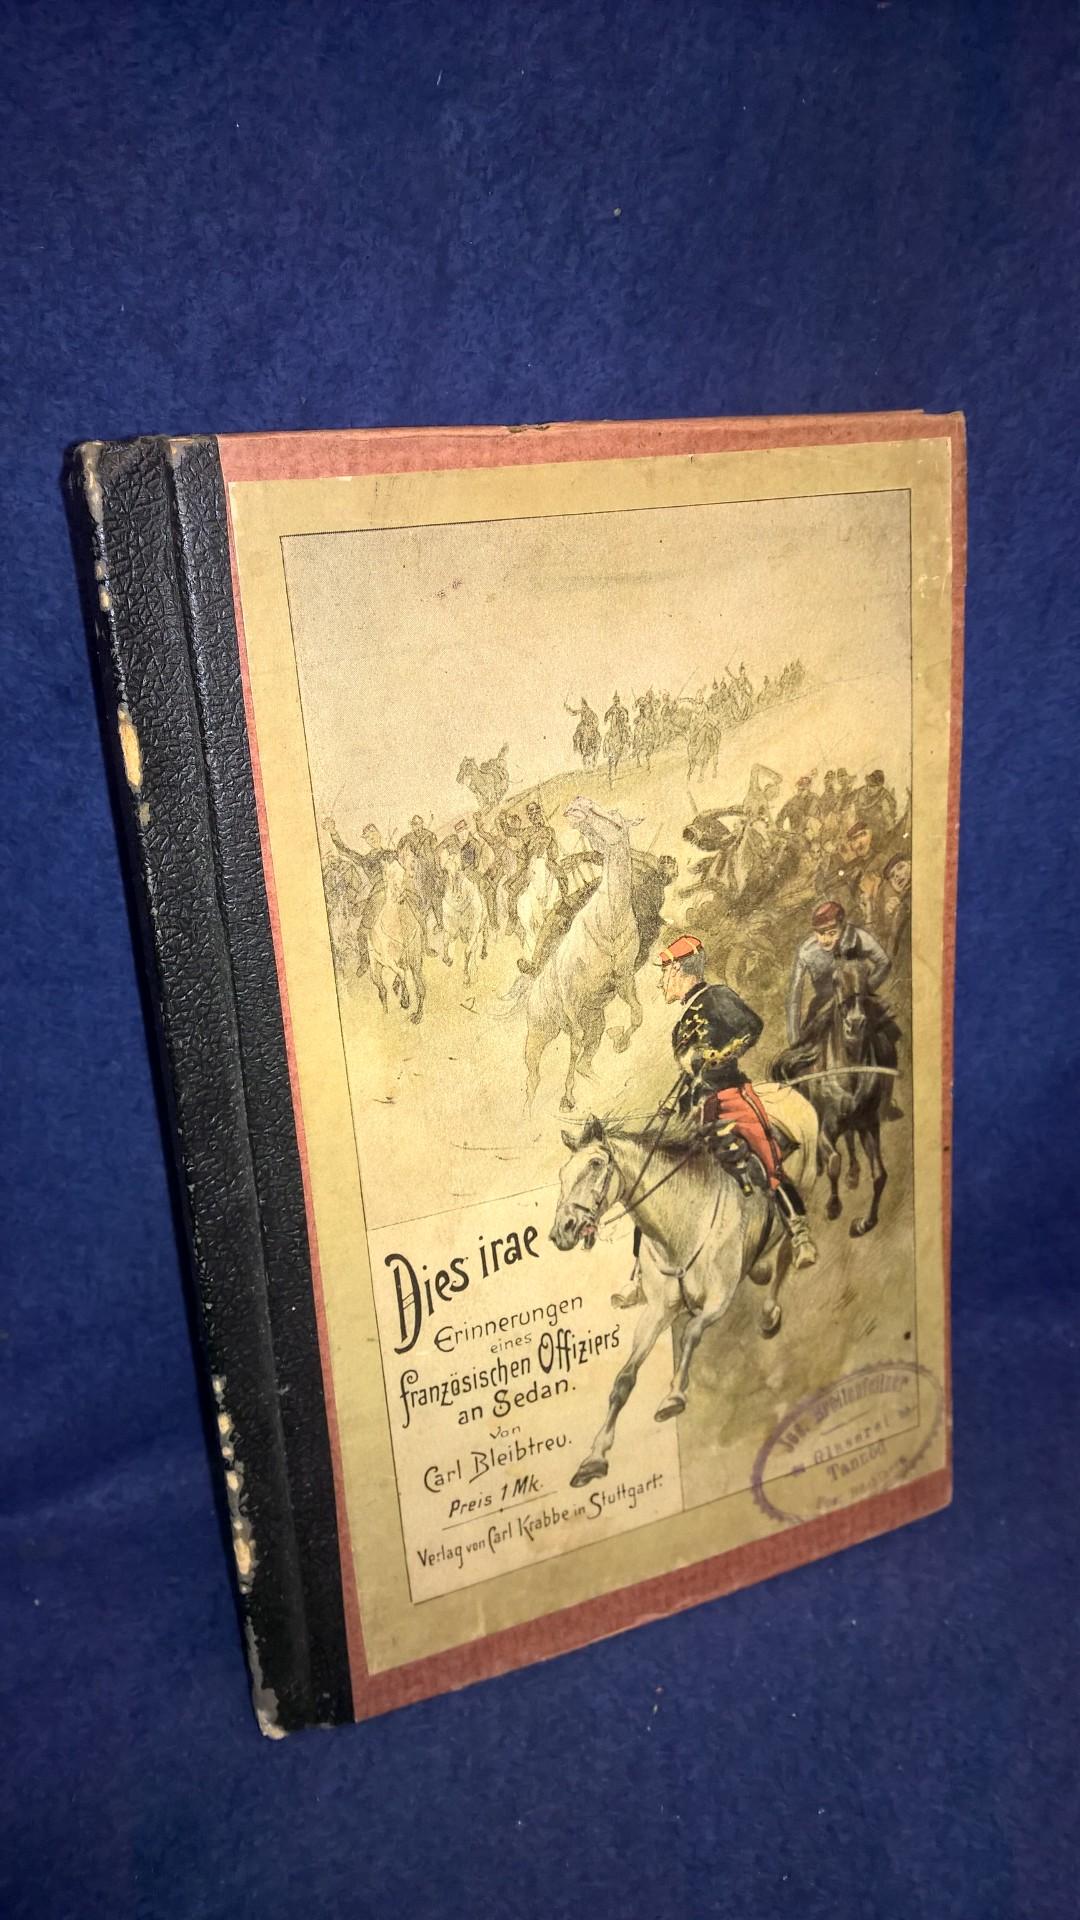 Dies irae. Erinnerungen eines französischen Offiziers an Sedan. Schlachtenerzählung aus dem Deutsch-Französischen Kriege 1870/71. Mit Illustrationen von Ch.Speyer.